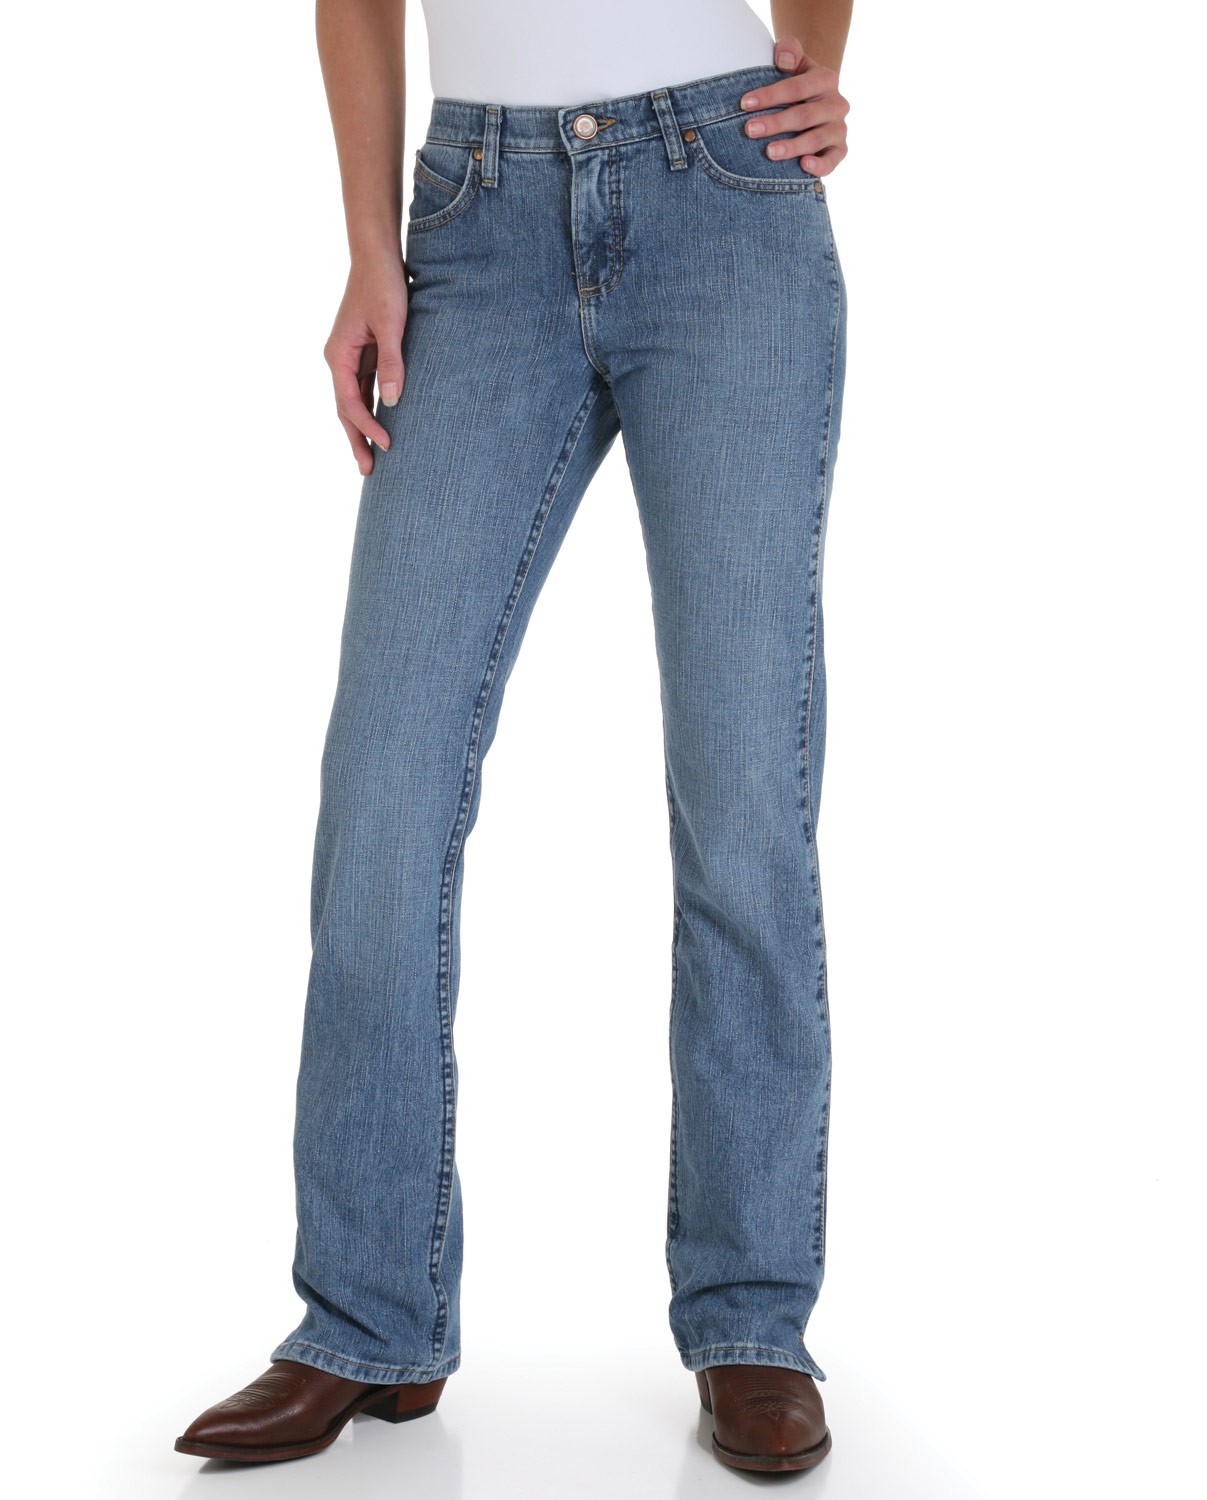 wrangler cash jeans